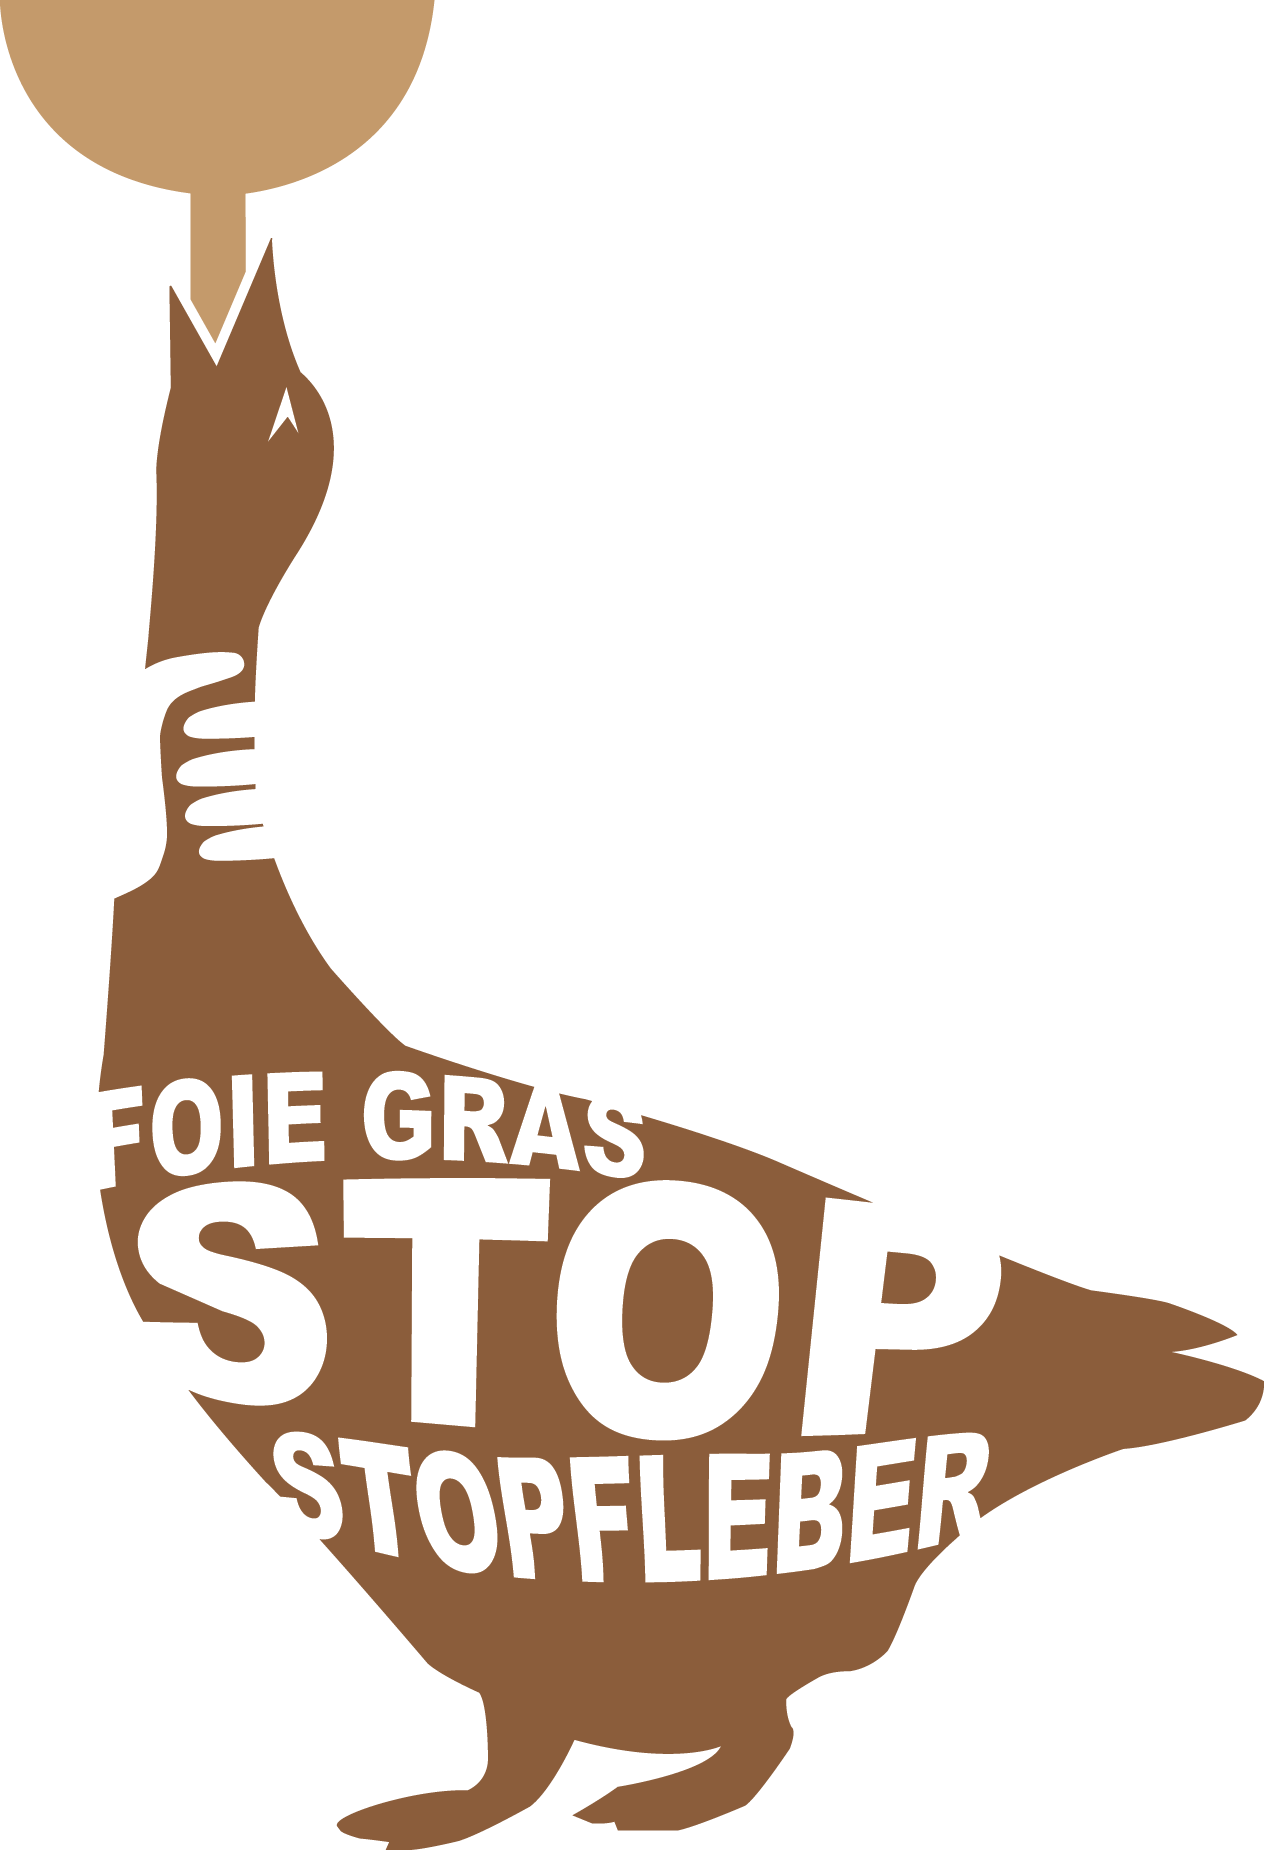 Sì al divieto di importazione di foie gras (Iniziativa foie gras)